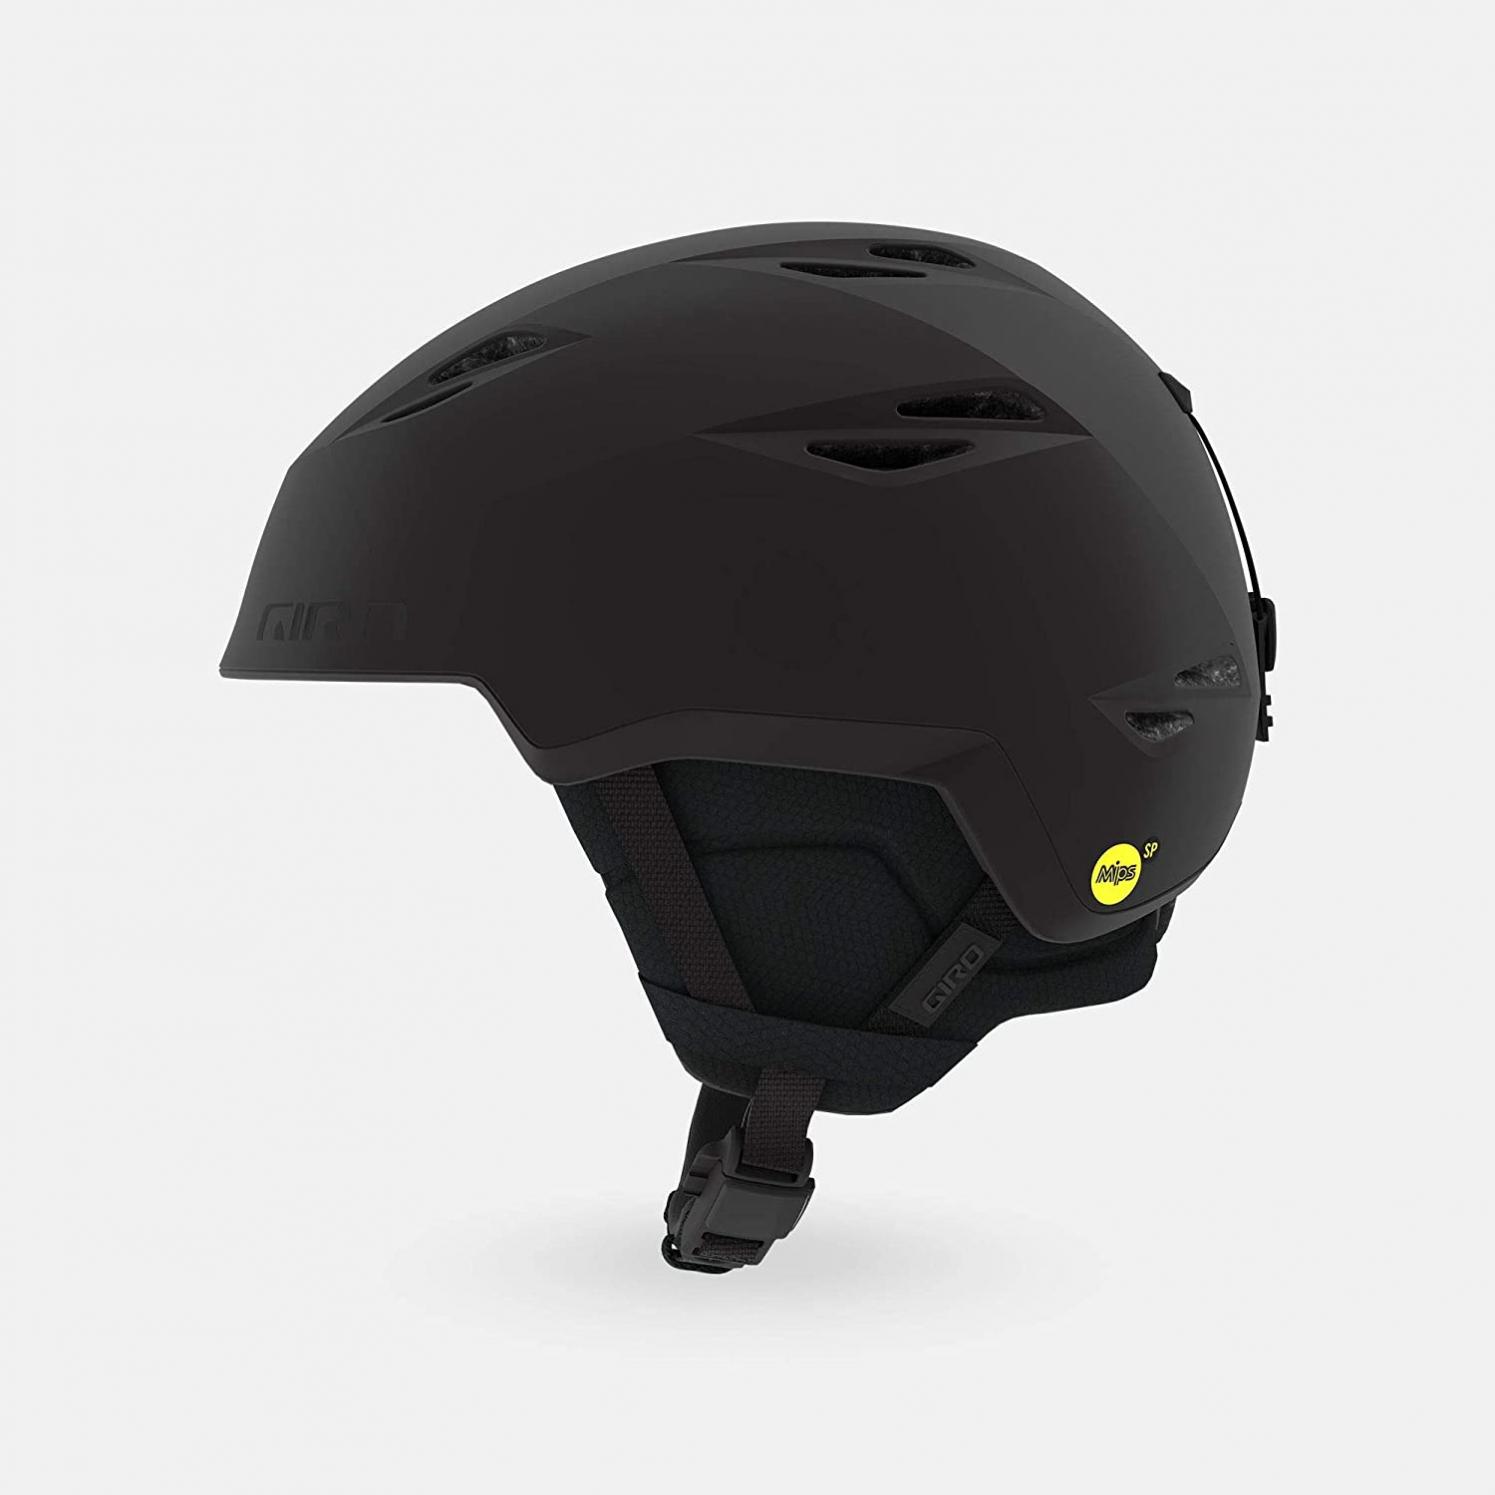 Giro Grid Spherical MIPS Ski Helmet - Snowboard Helmet for Men & Women - Designed for Backcountry Guides, Side Country, and Touring Athletes - Lightest Weight Giro Ski Helmet for Adults…